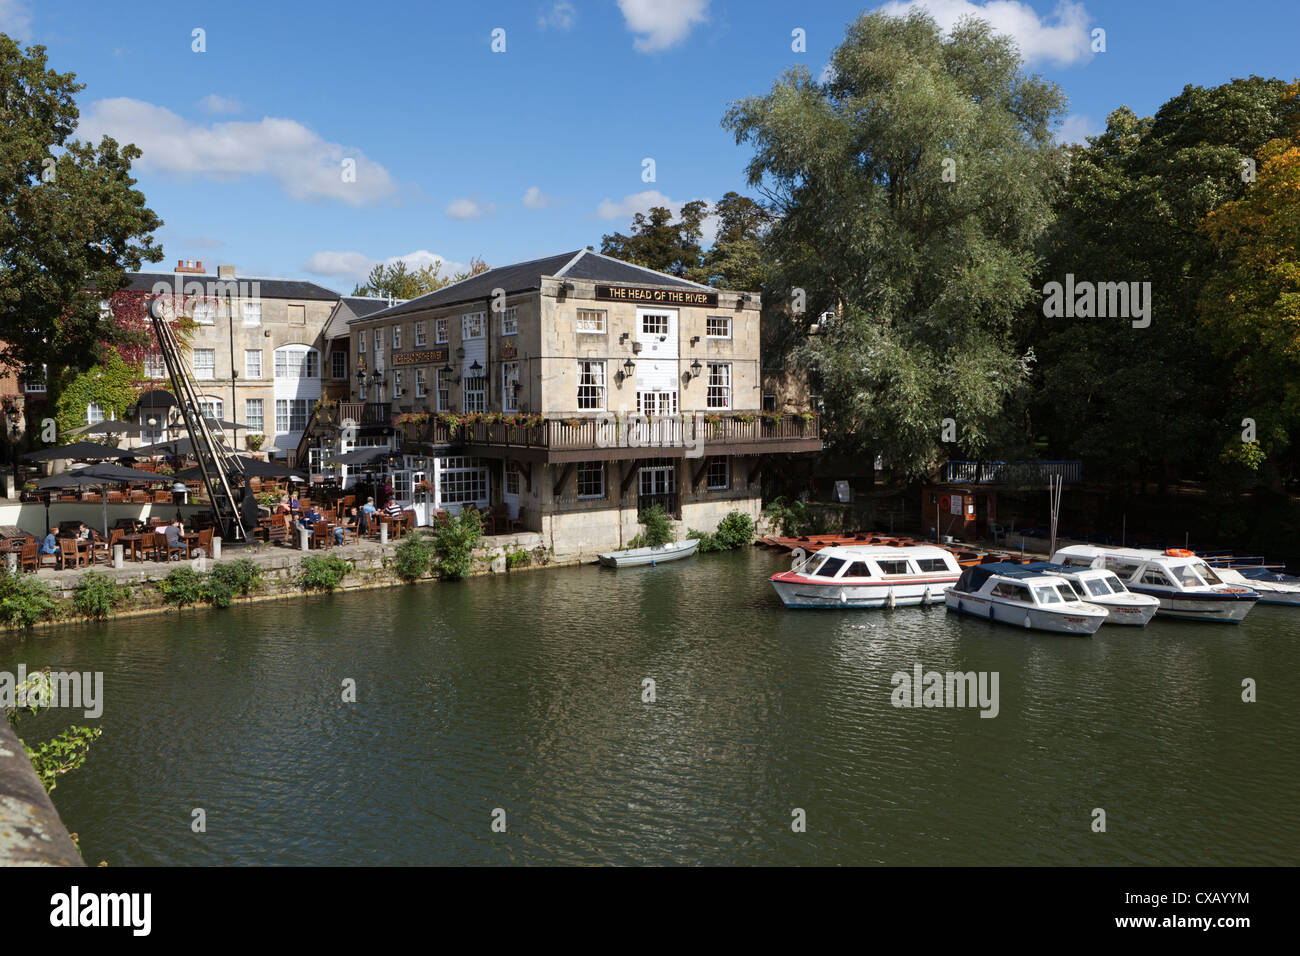 Der Kopf des River Pub neben der Themse, Oxford, Oxfordshire, England, Vereinigtes Königreich, Europa Stockfoto